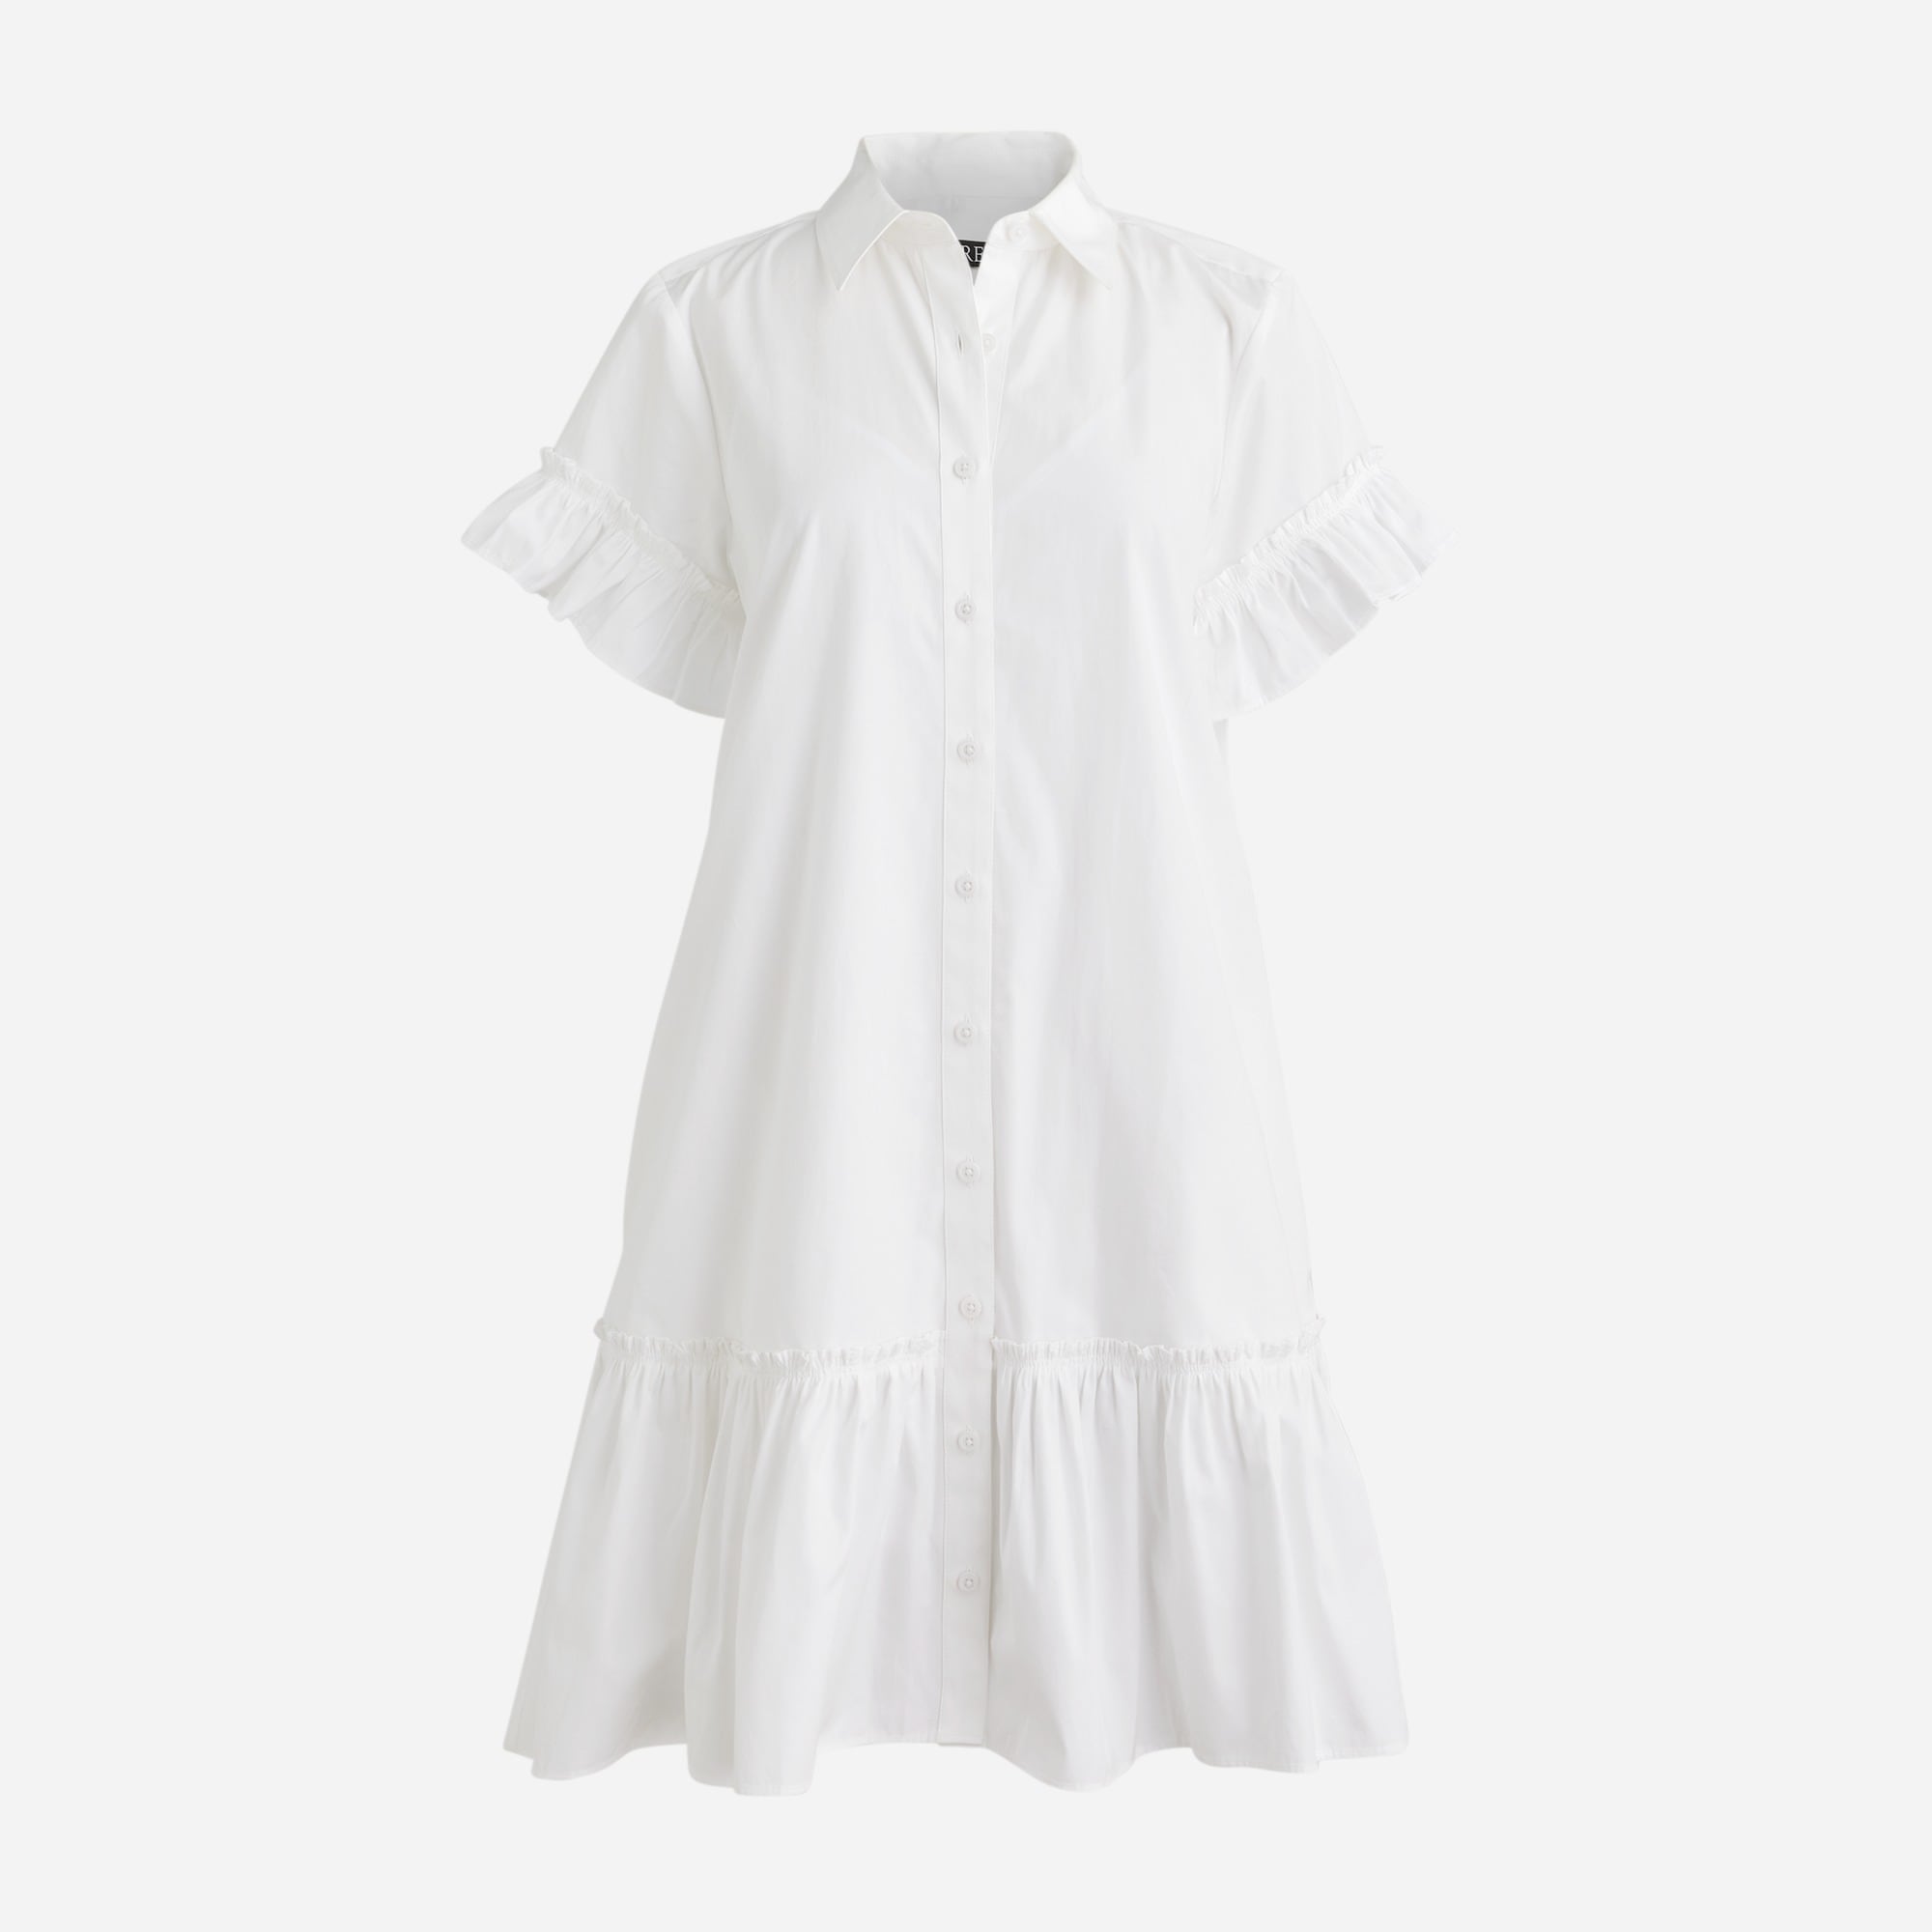  Amelia shirtdress in cotton poplin